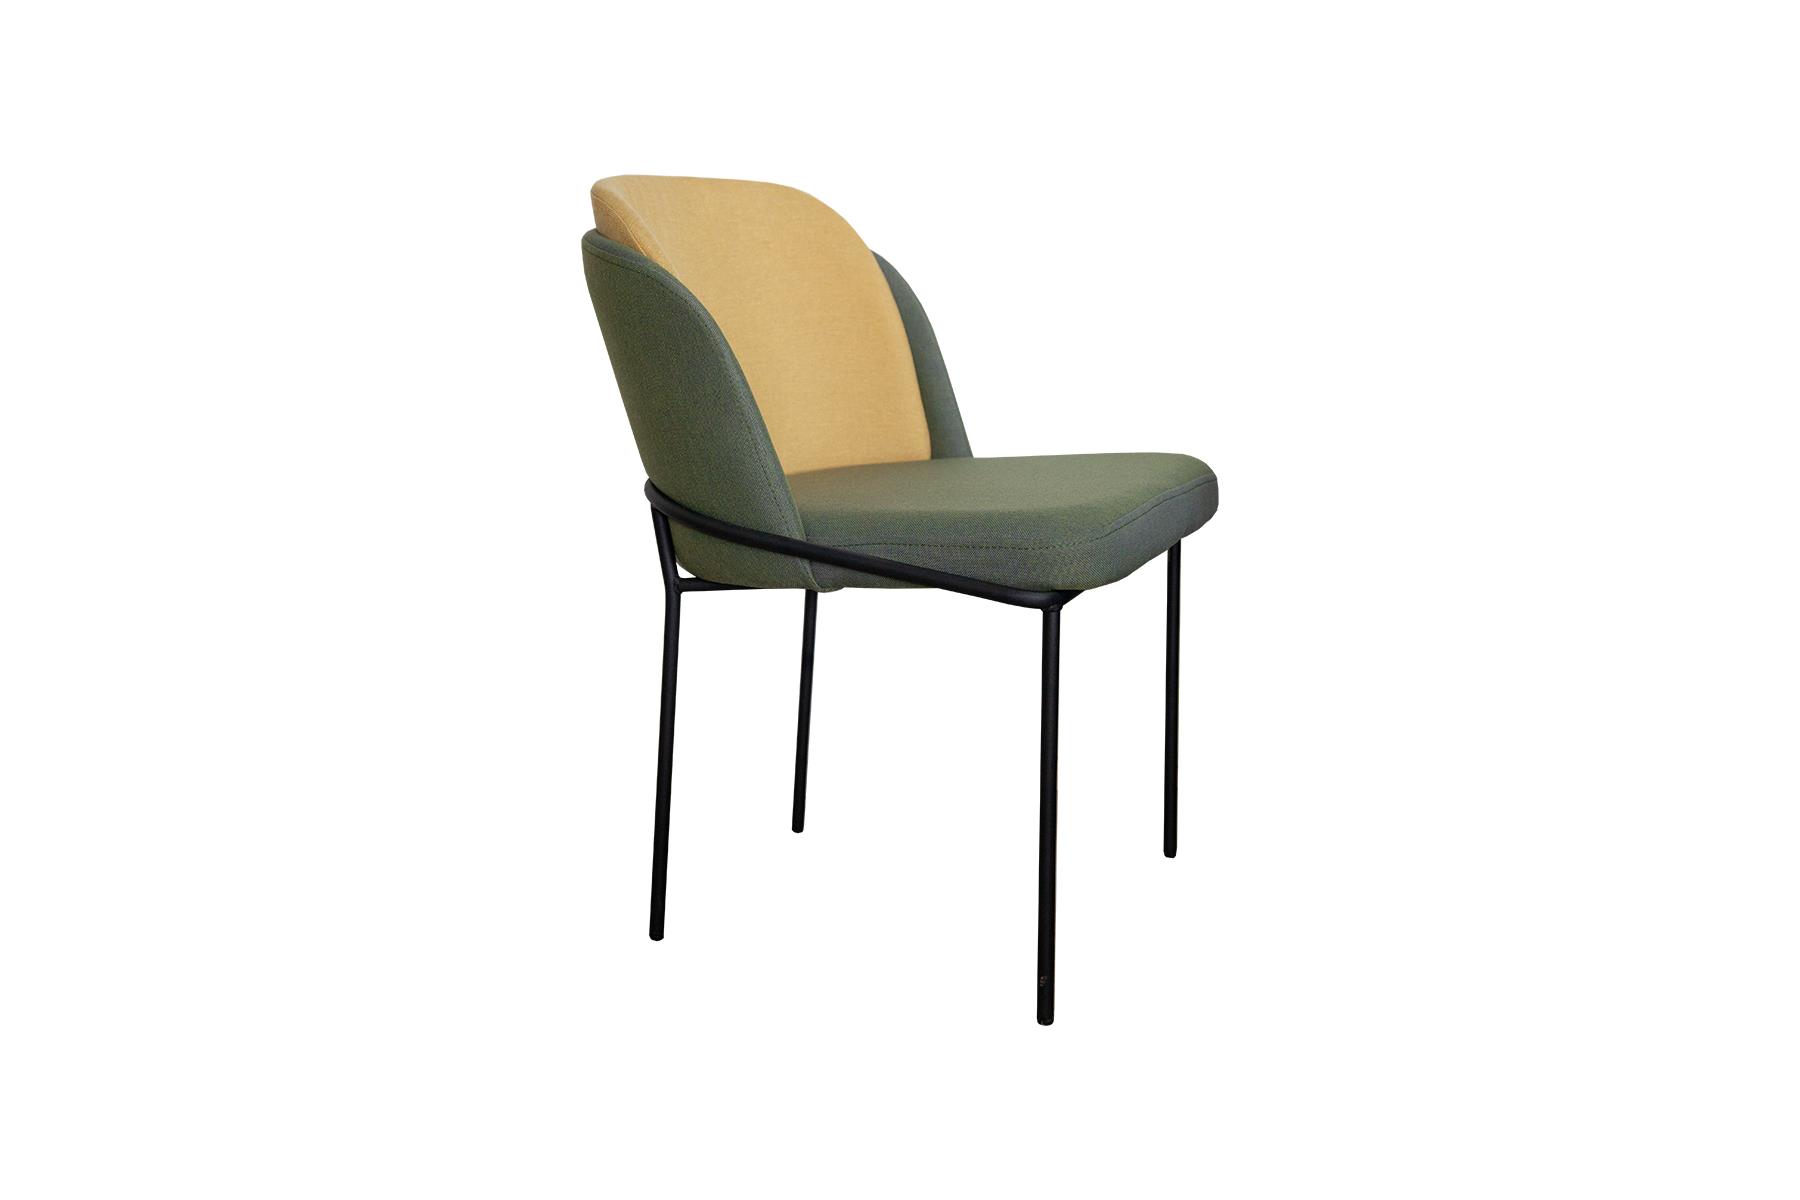 Stolice Boss bitan su element svake prostorije koja želi pokazati eleganciju i originalnost. Dizajn ove stolice pokazuje metalnu strukturu sa koji je vidljiv iznad naslona sjedala. Ova stolica osmišljena je kako bi pružala udobnost kakvu svi očekujemo.